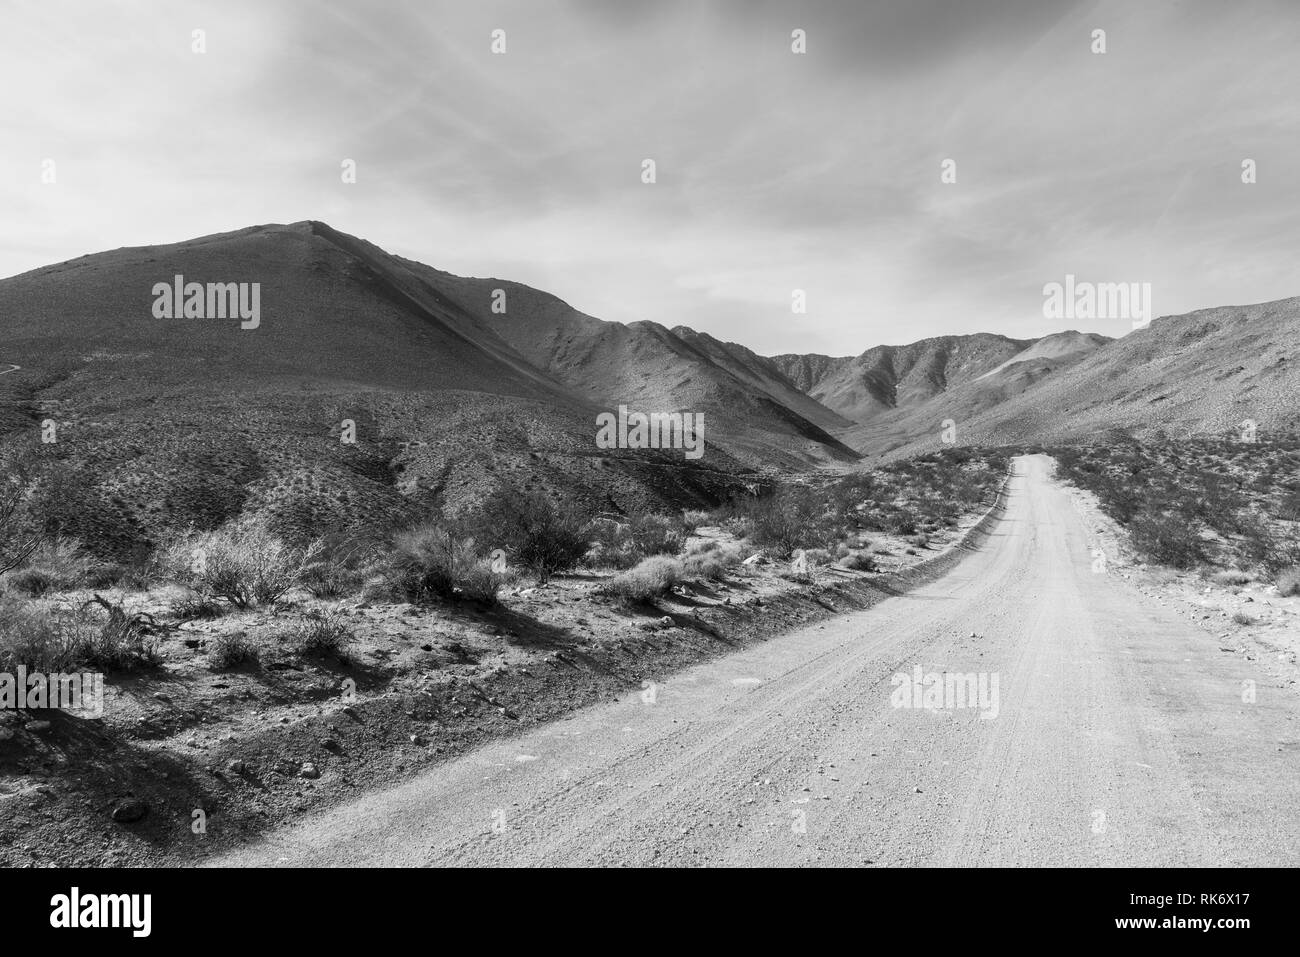 In bianco e nero, deserto strada sterrata in arido deserto montagna sotto il cielo nuvoloso. Banca di sporco su ciascun lato della strada e spazzola del deserto. Foto Stock